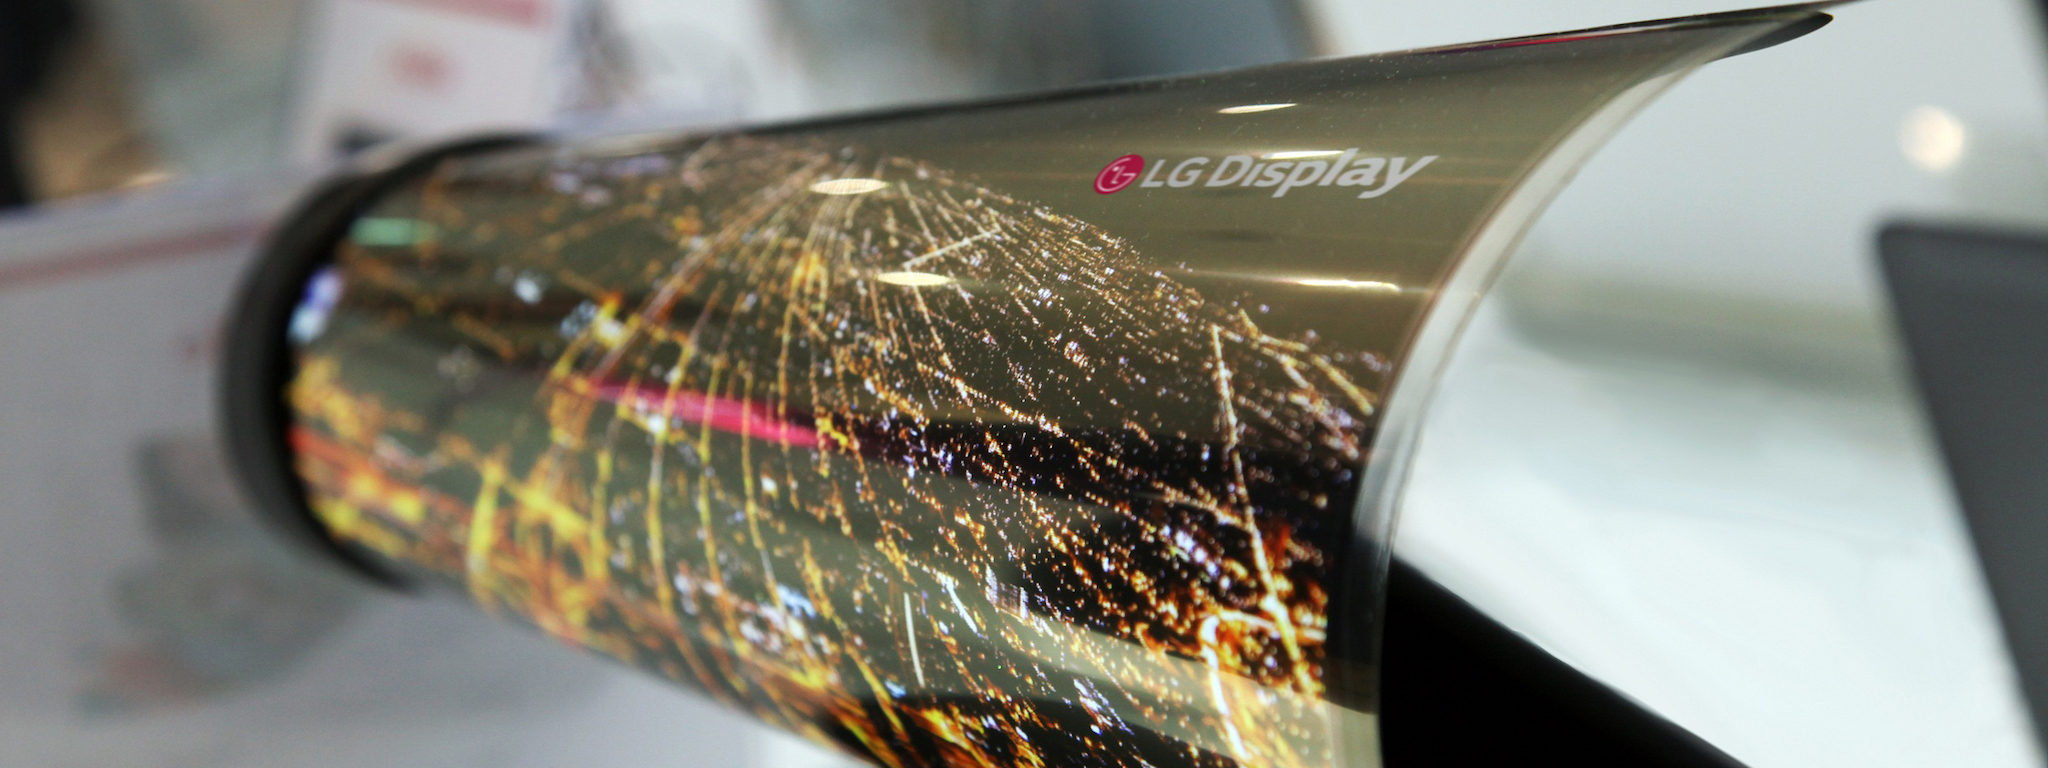 LG Display đầu tư gần 2 tỉ USD cho OLED cong